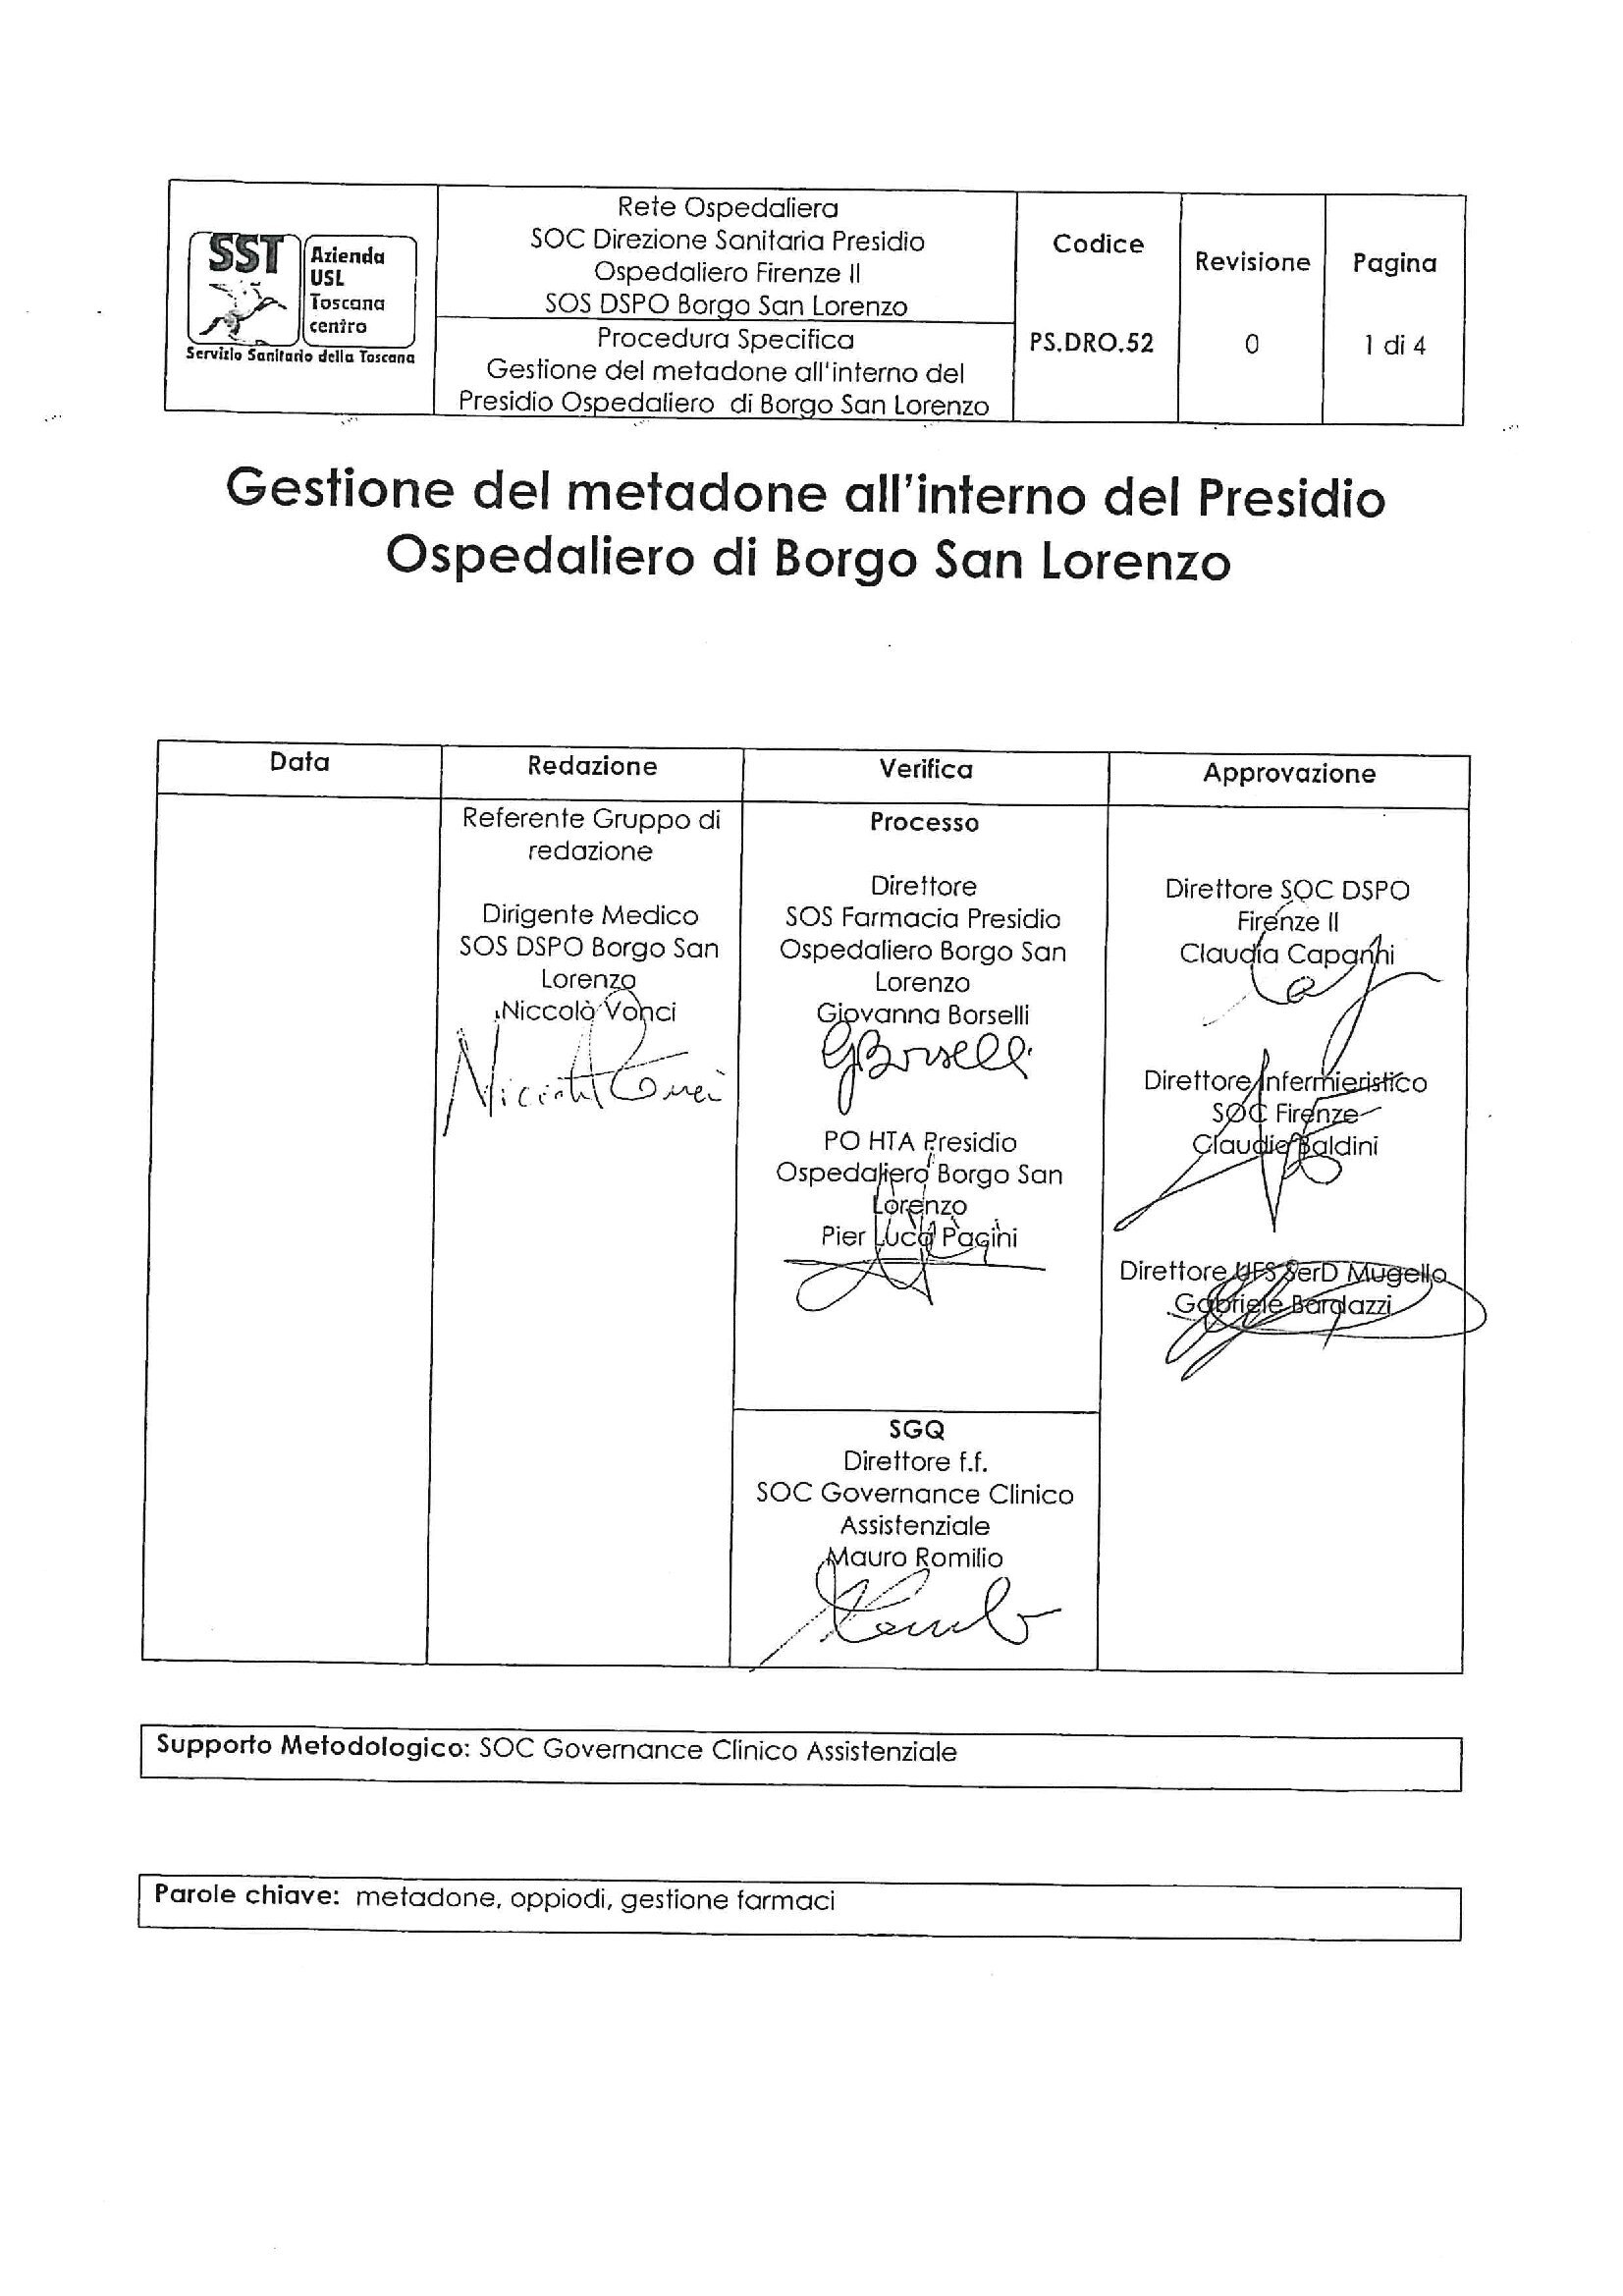 PS.DRO.52 Gestione del metadone all’interno del Presidio Ospedaliero di Borgo San Lorenzo